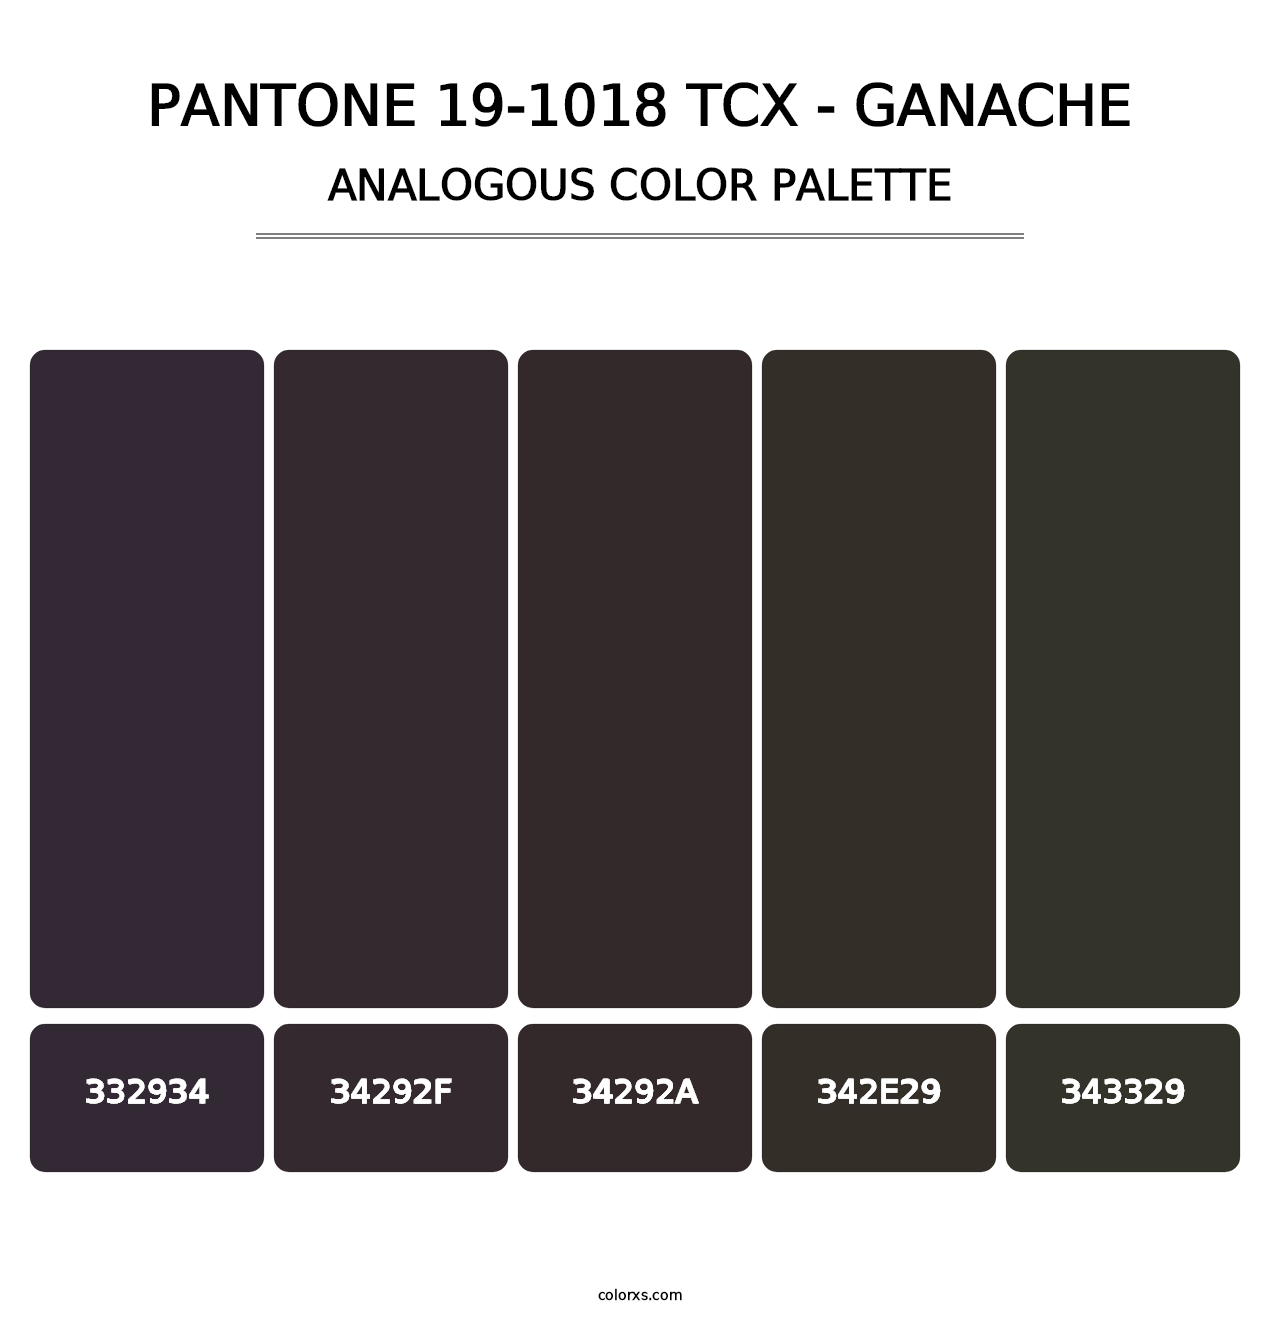 PANTONE 19-1018 TCX - Ganache - Analogous Color Palette